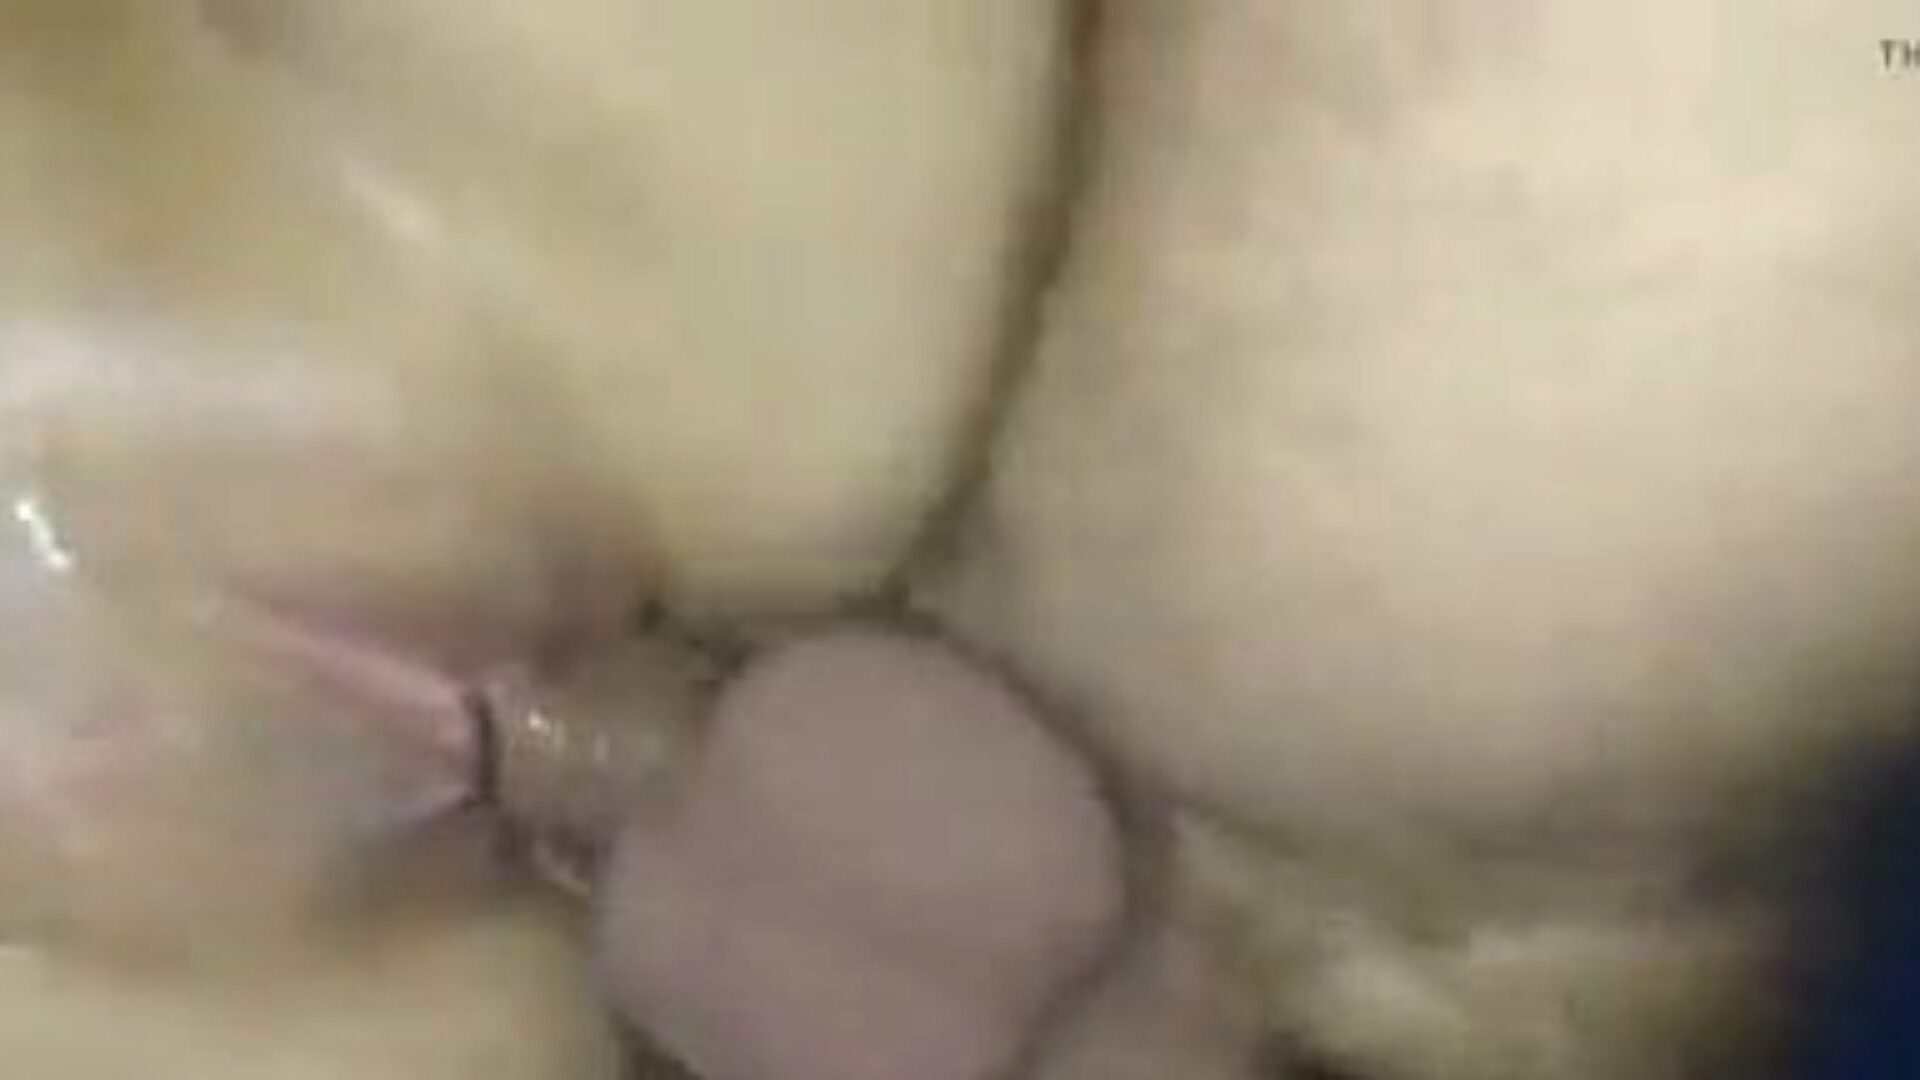 meine feuchte muschi: δωρεάν βίντεο πορνό μουνί 38 - xhamster παρακολουθήστε meine feuchte muschi βίντεο κλιπ σεξ δωρεάν στο xhamster, με το πιο σέξι γερμανικό μουνί, οργασμό & επεισόδια ώριμης ταινίας πορνό